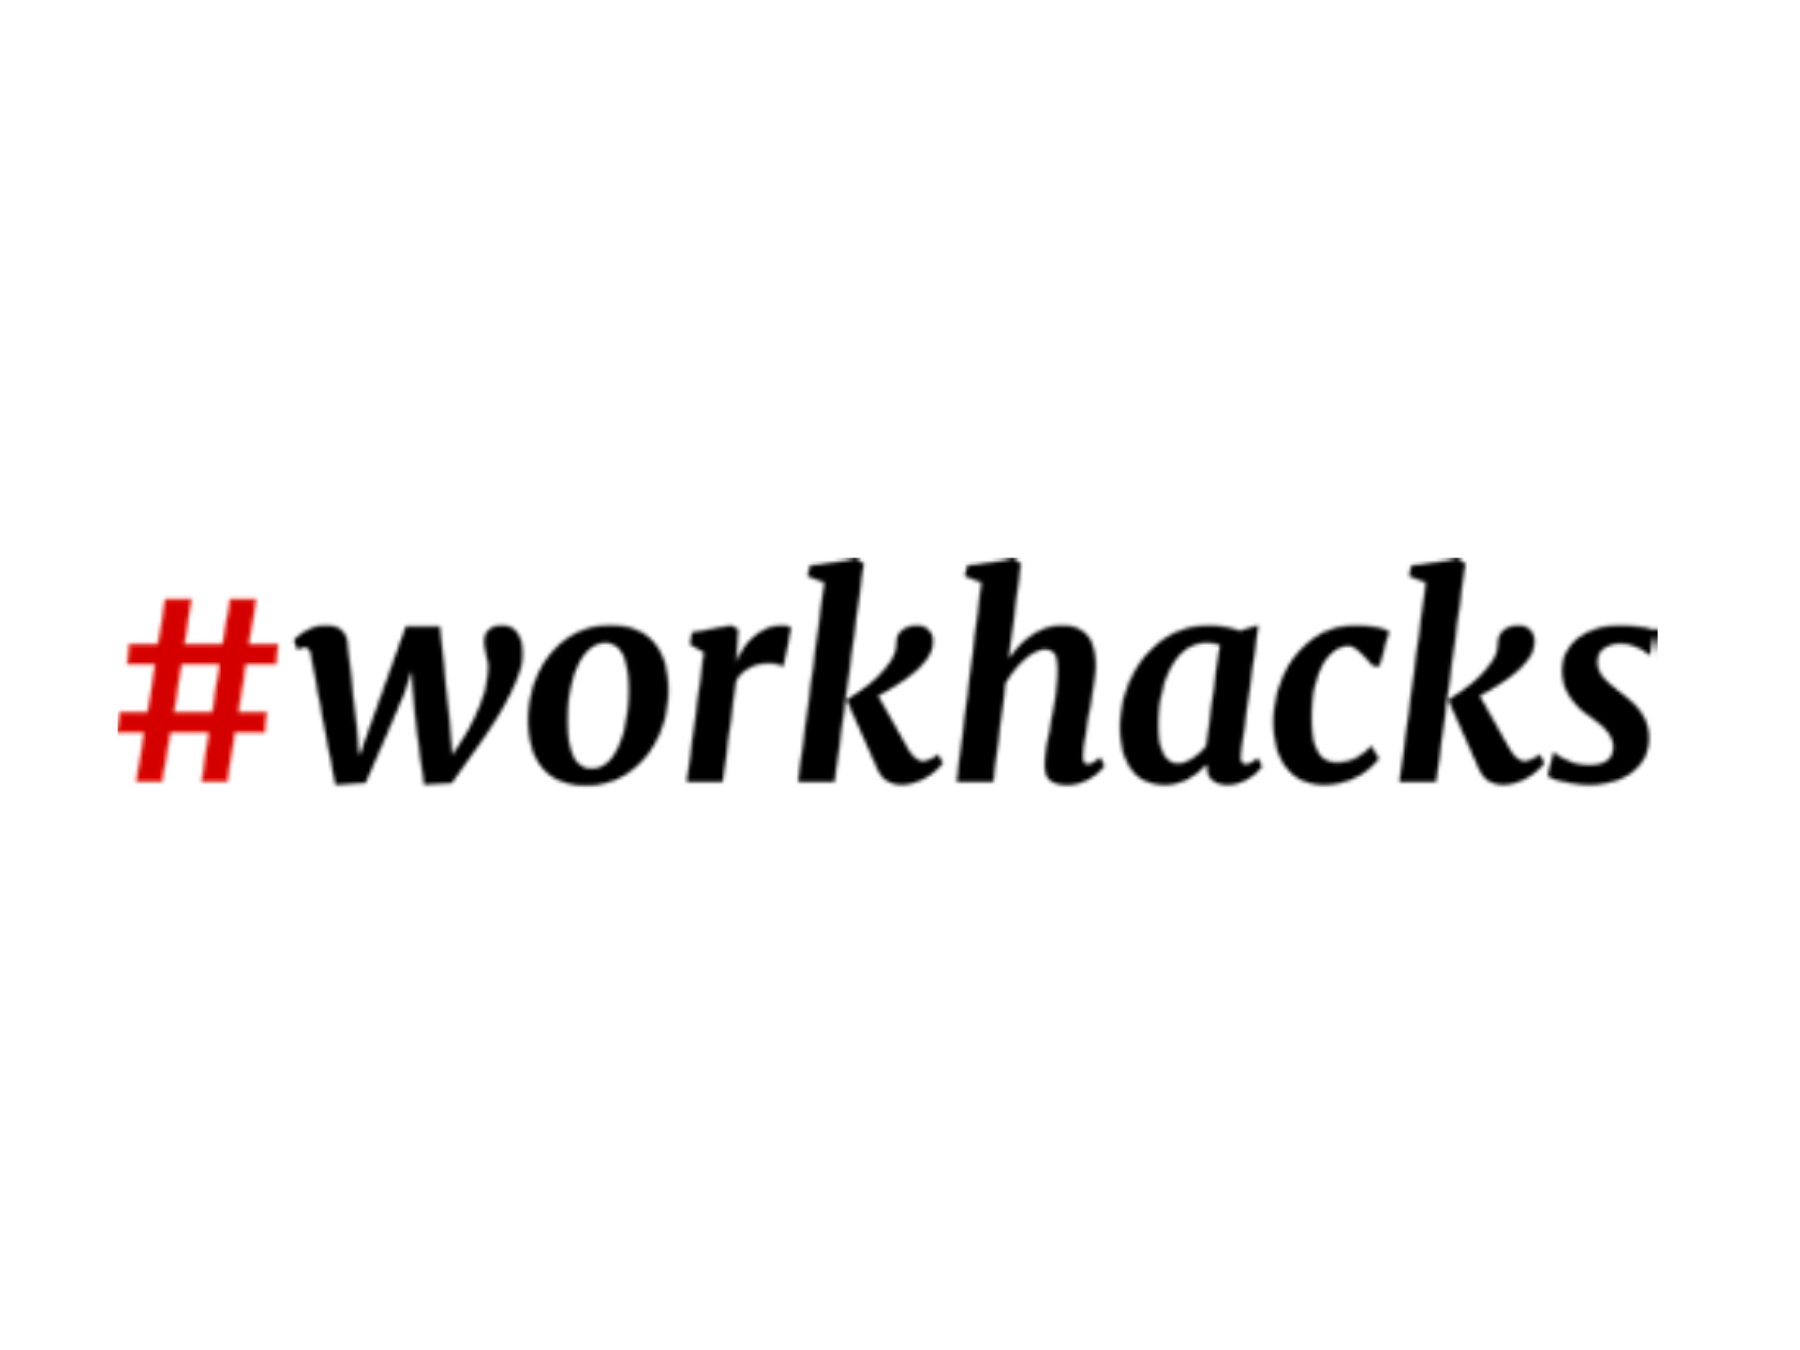 Logo Workhacks@2x.png